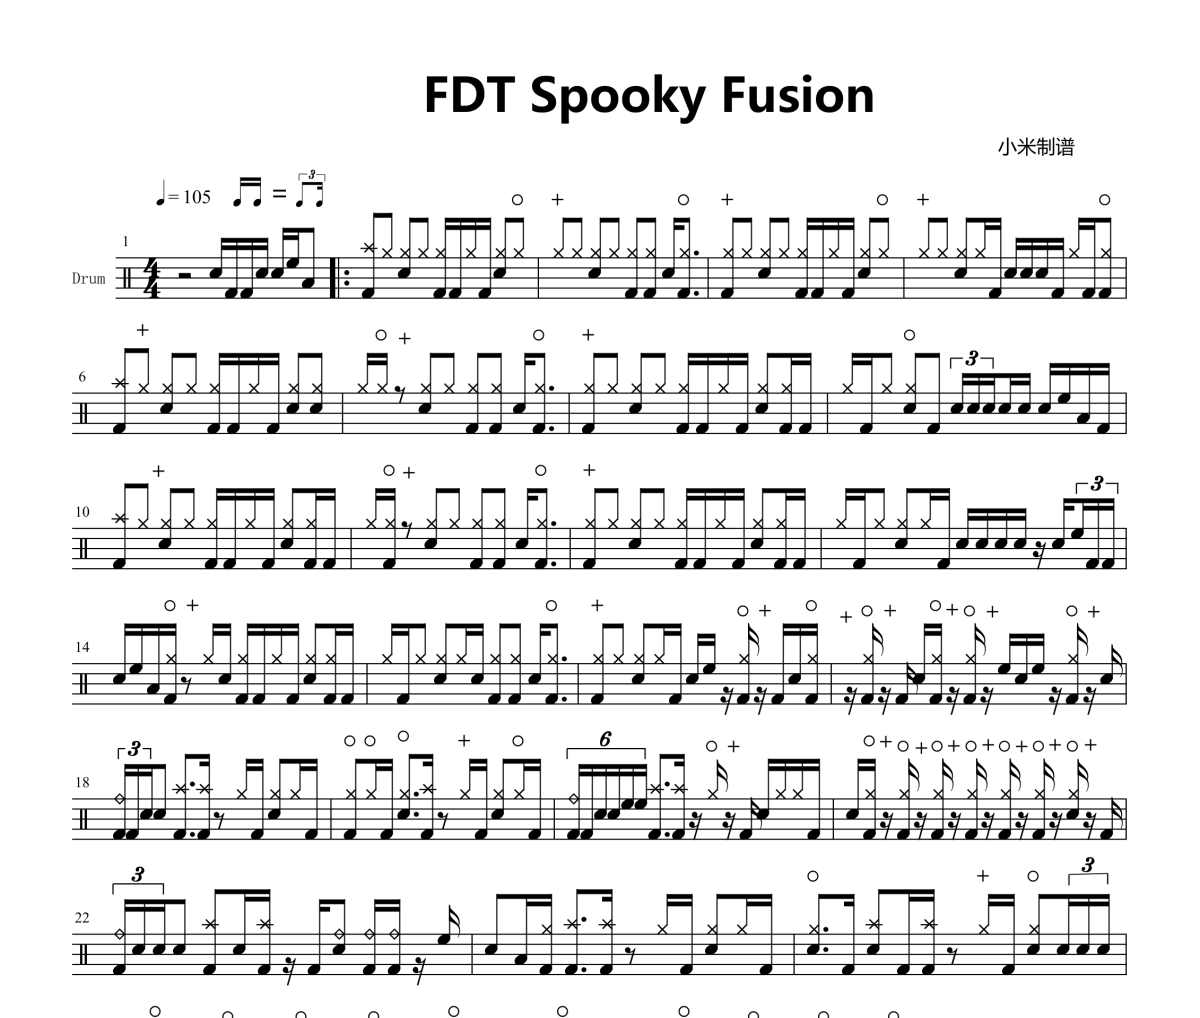 高级比赛曲目-FDT Spooky Fusion架子鼓|爵士鼓|鼓谱+动态视频